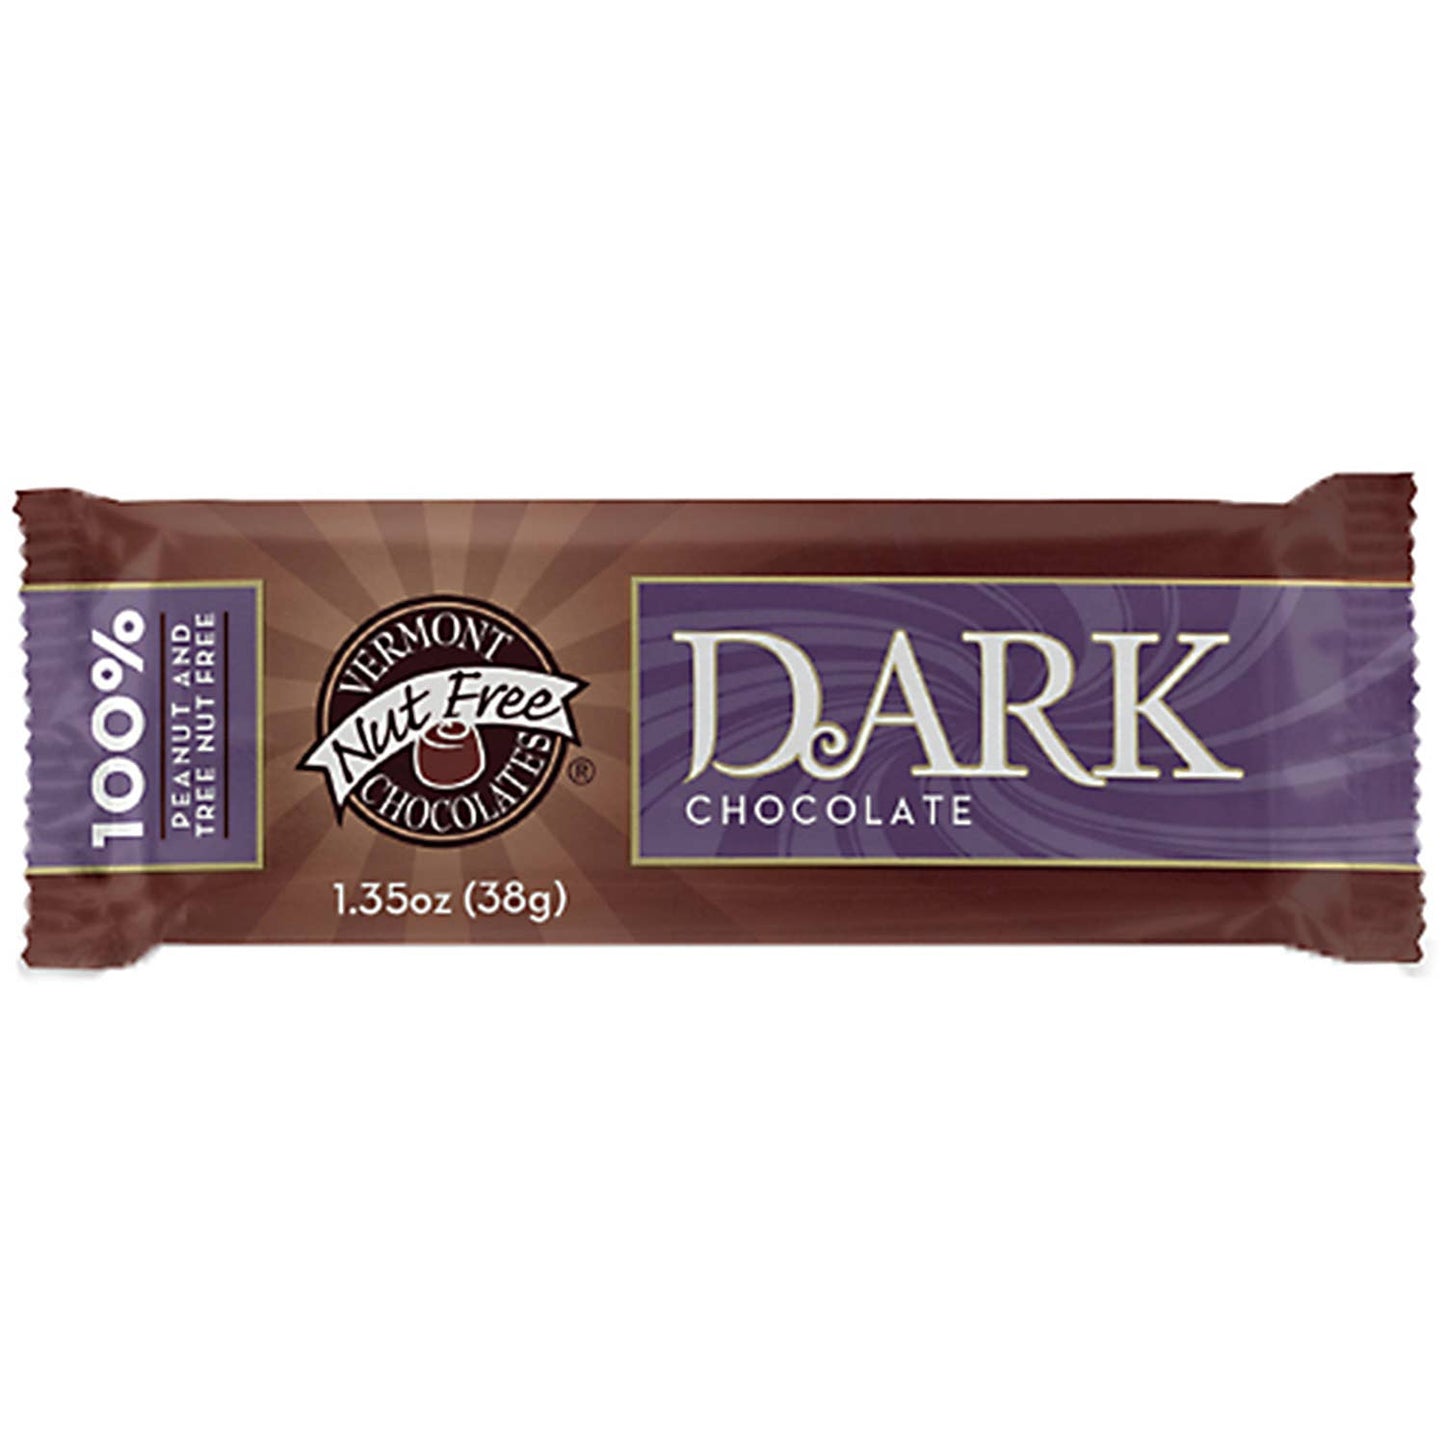 Vermont Nut-Free - Dark Chocolate Bar